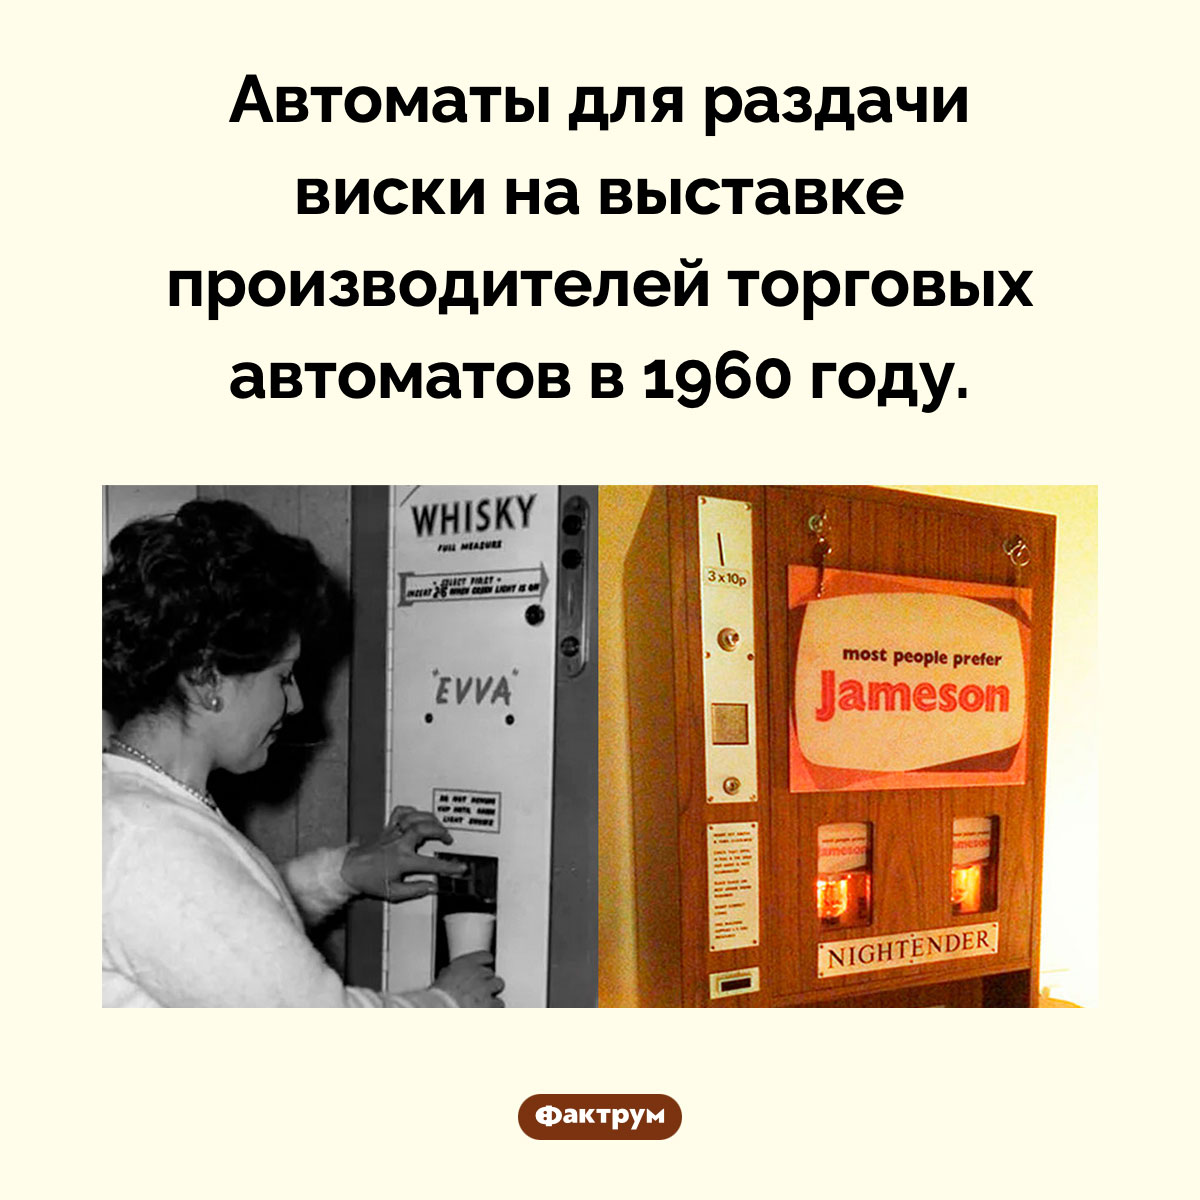 Автомат для раздачи виски. Автоматы для раздачи виски на выставке производителей торговых автоматов в 1960 году.